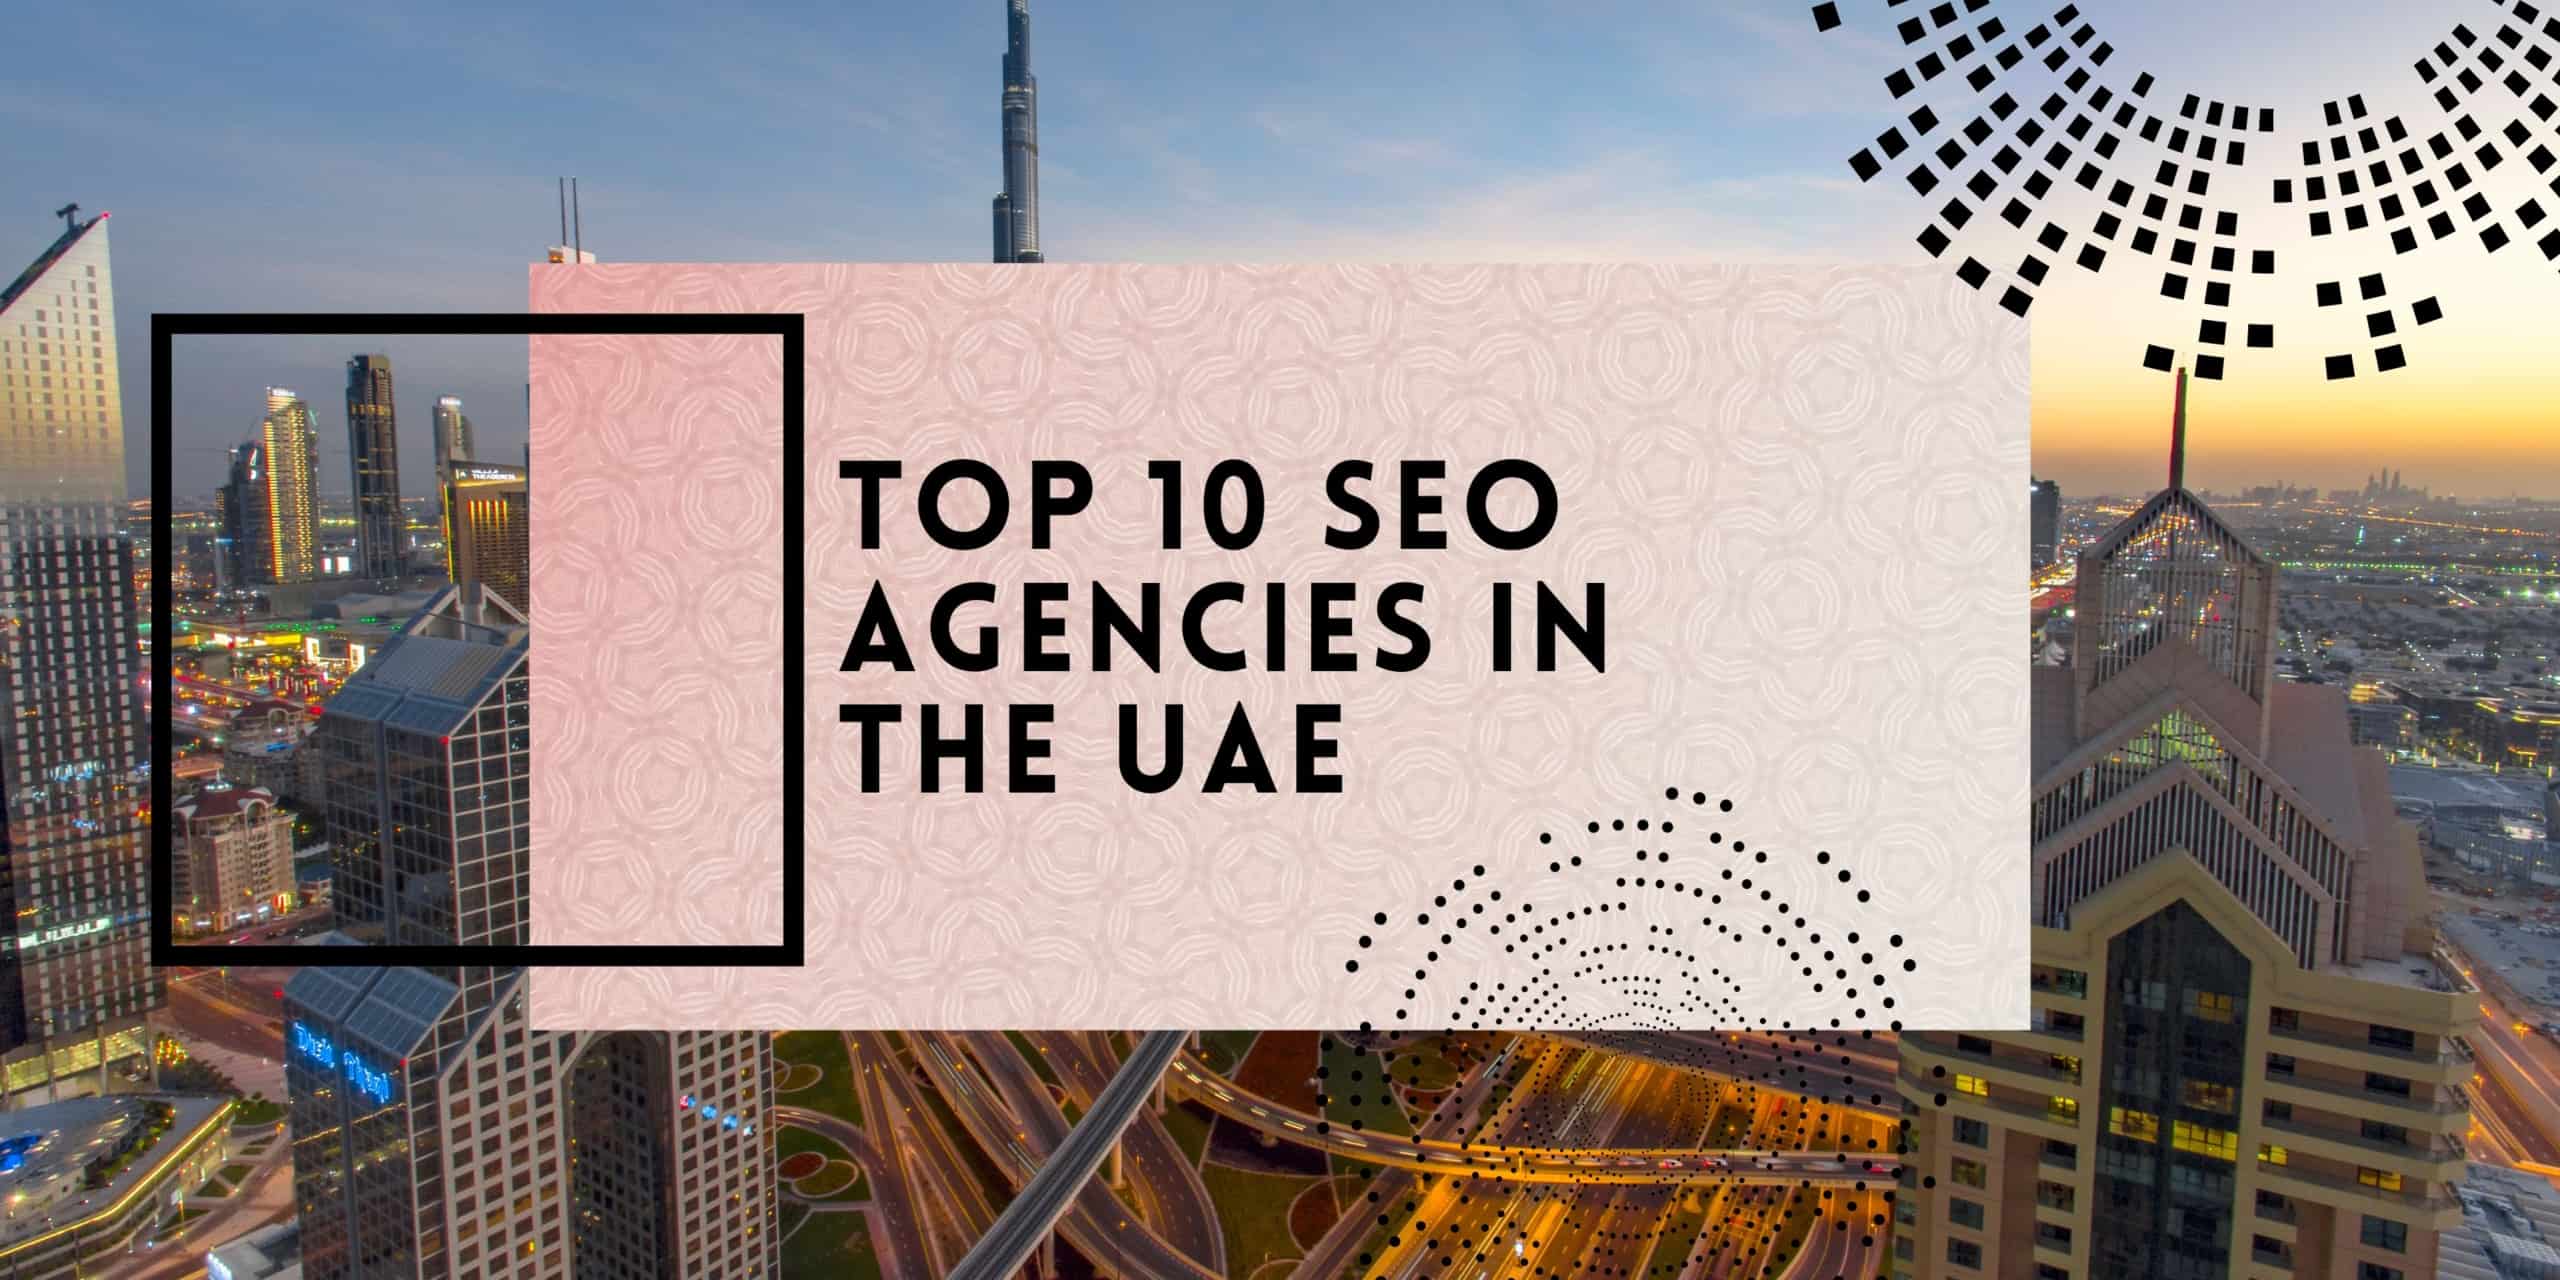 Top 10 SEO Agencies in the UAE